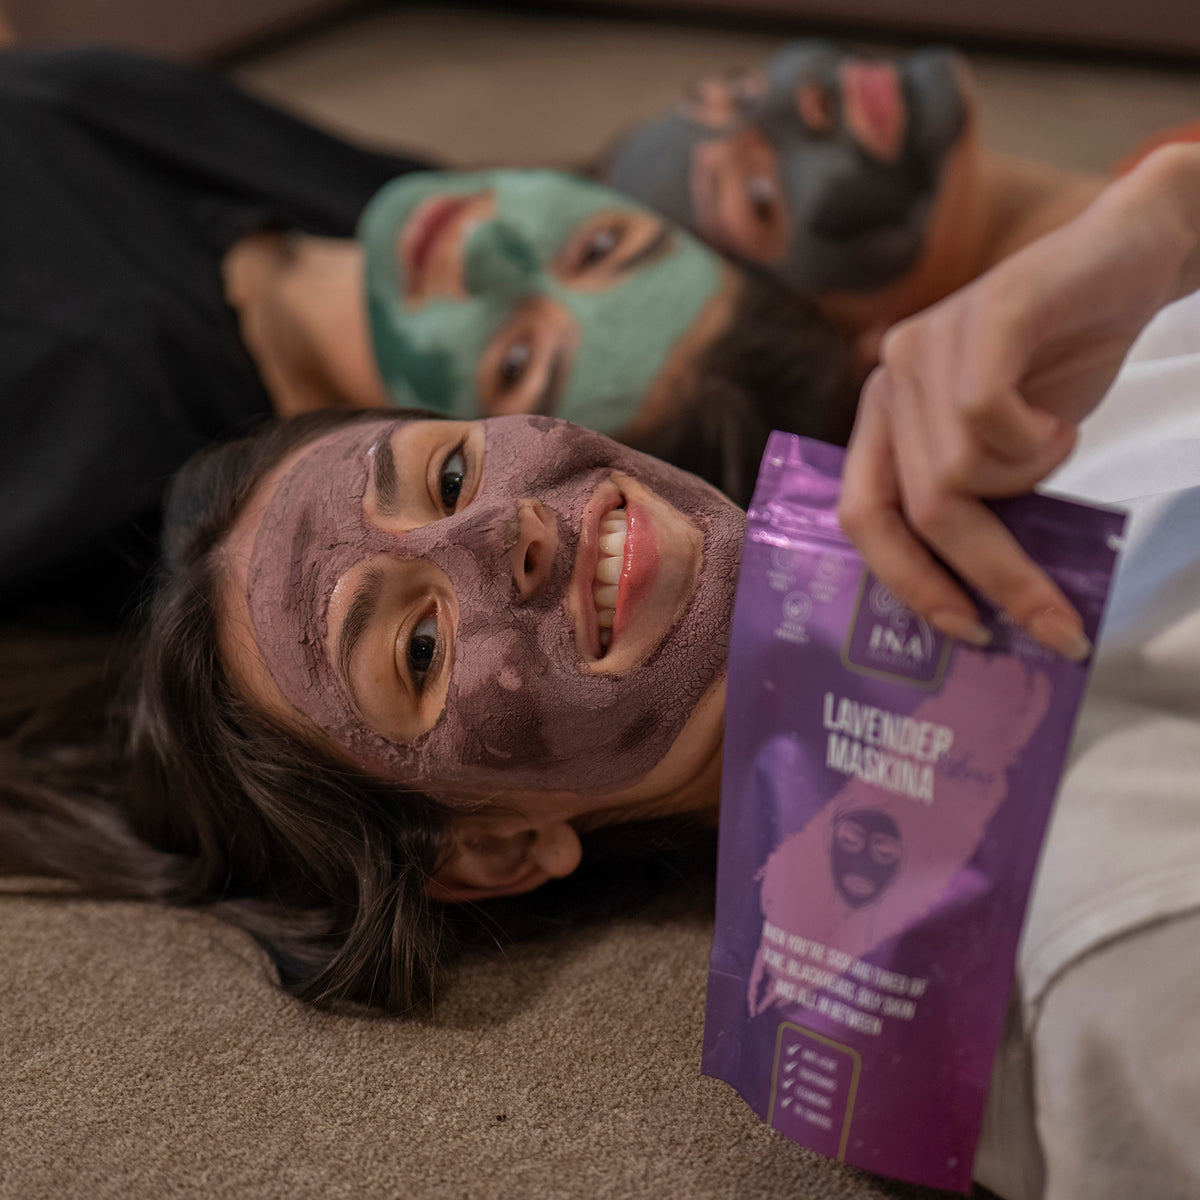 Gesichtsmaske - Lavendel Maskina - Intensivpflege für fettige, problematische Haut